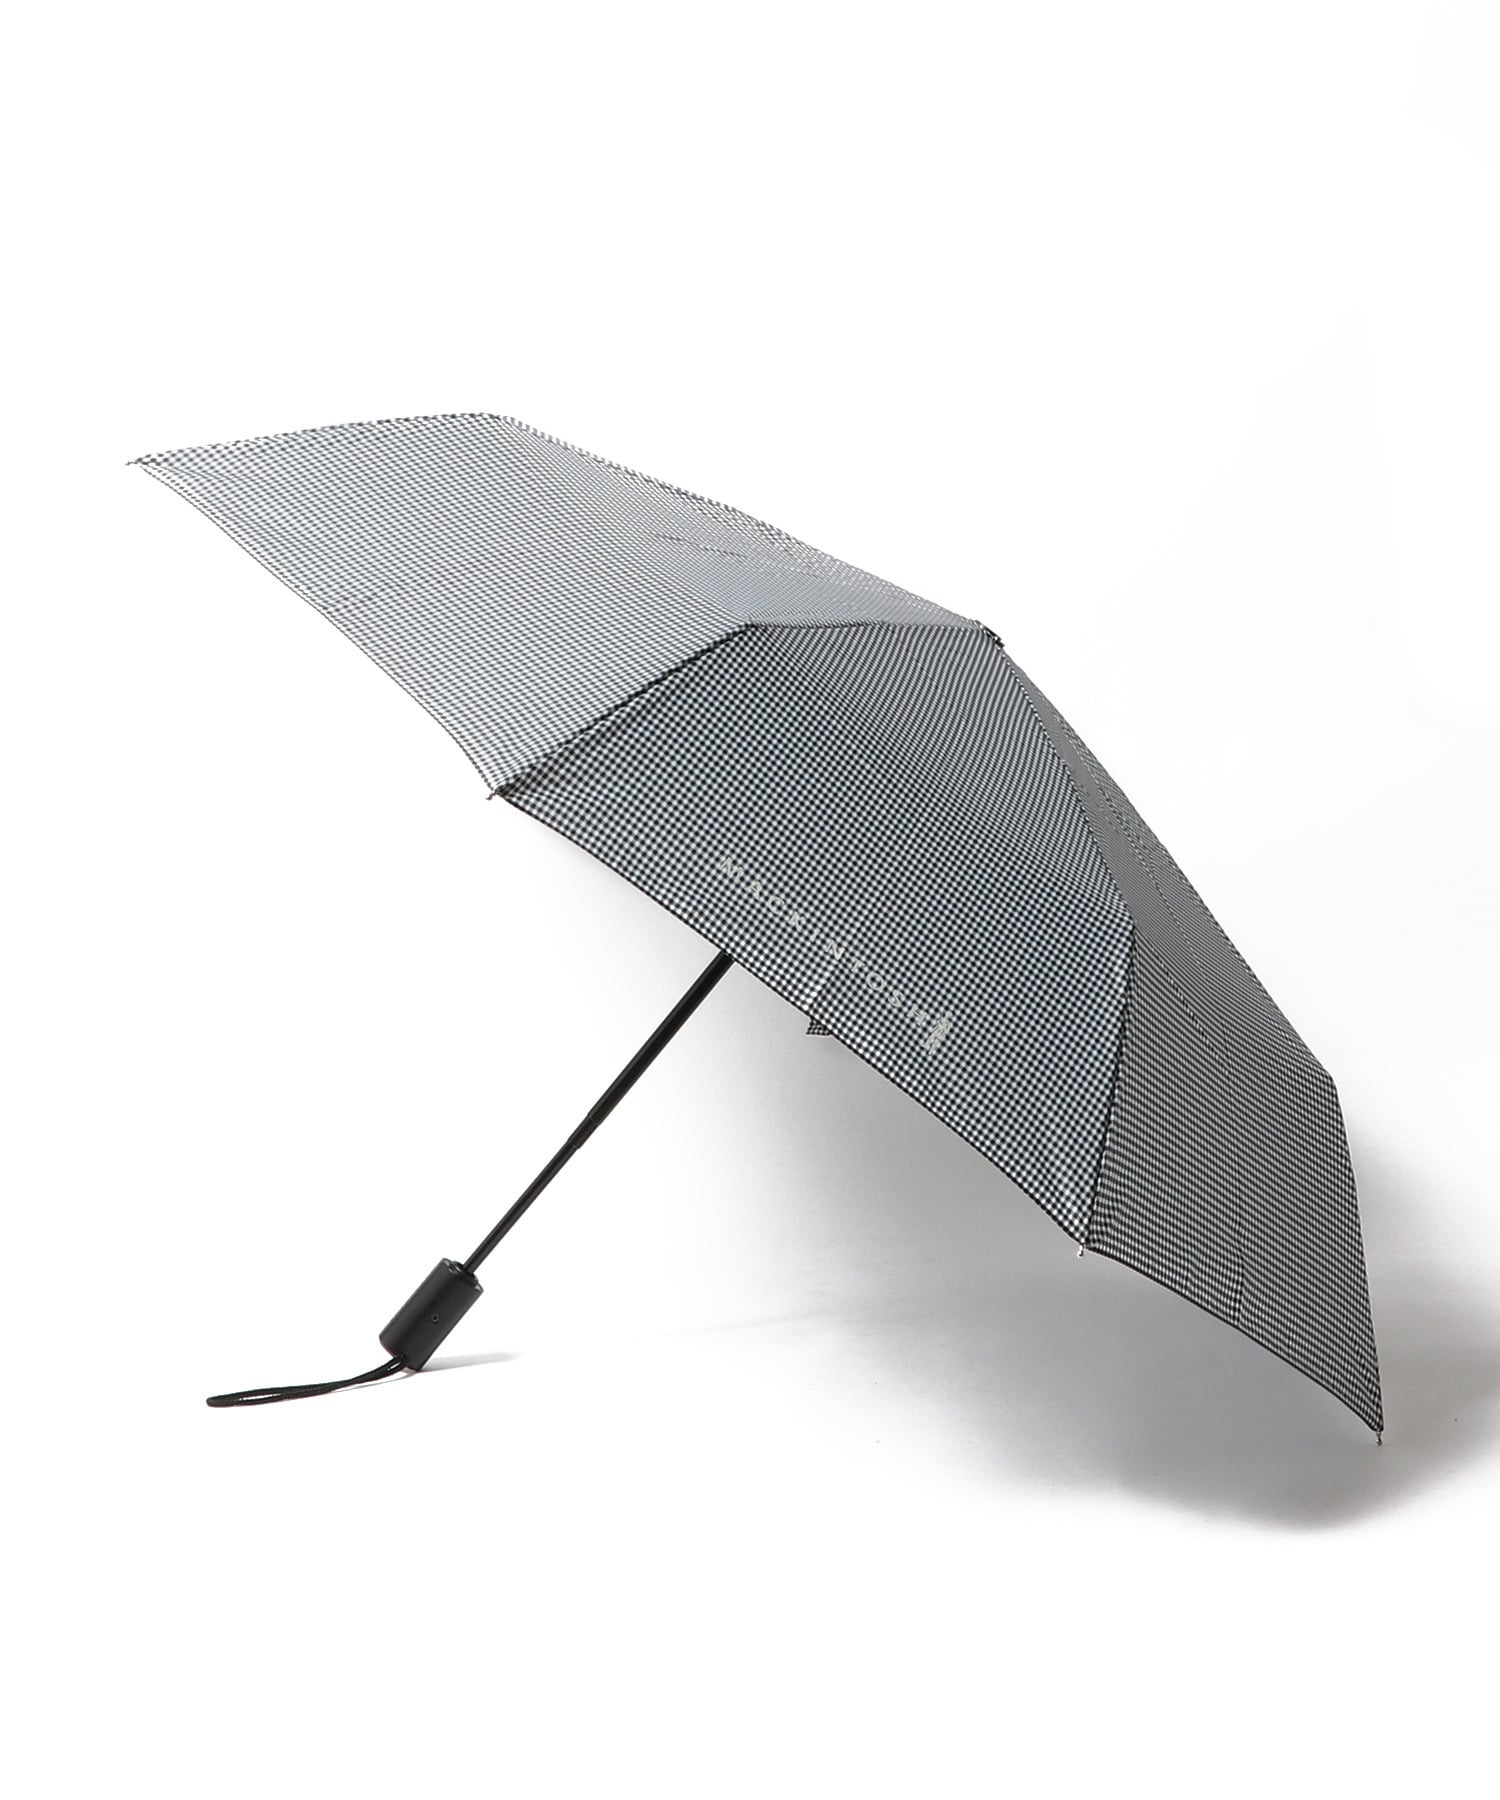 幅広type キャスコ(Kasco) ゴルフ傘 Kasco 千鳥柄晴雨兼用ワンタッチ 